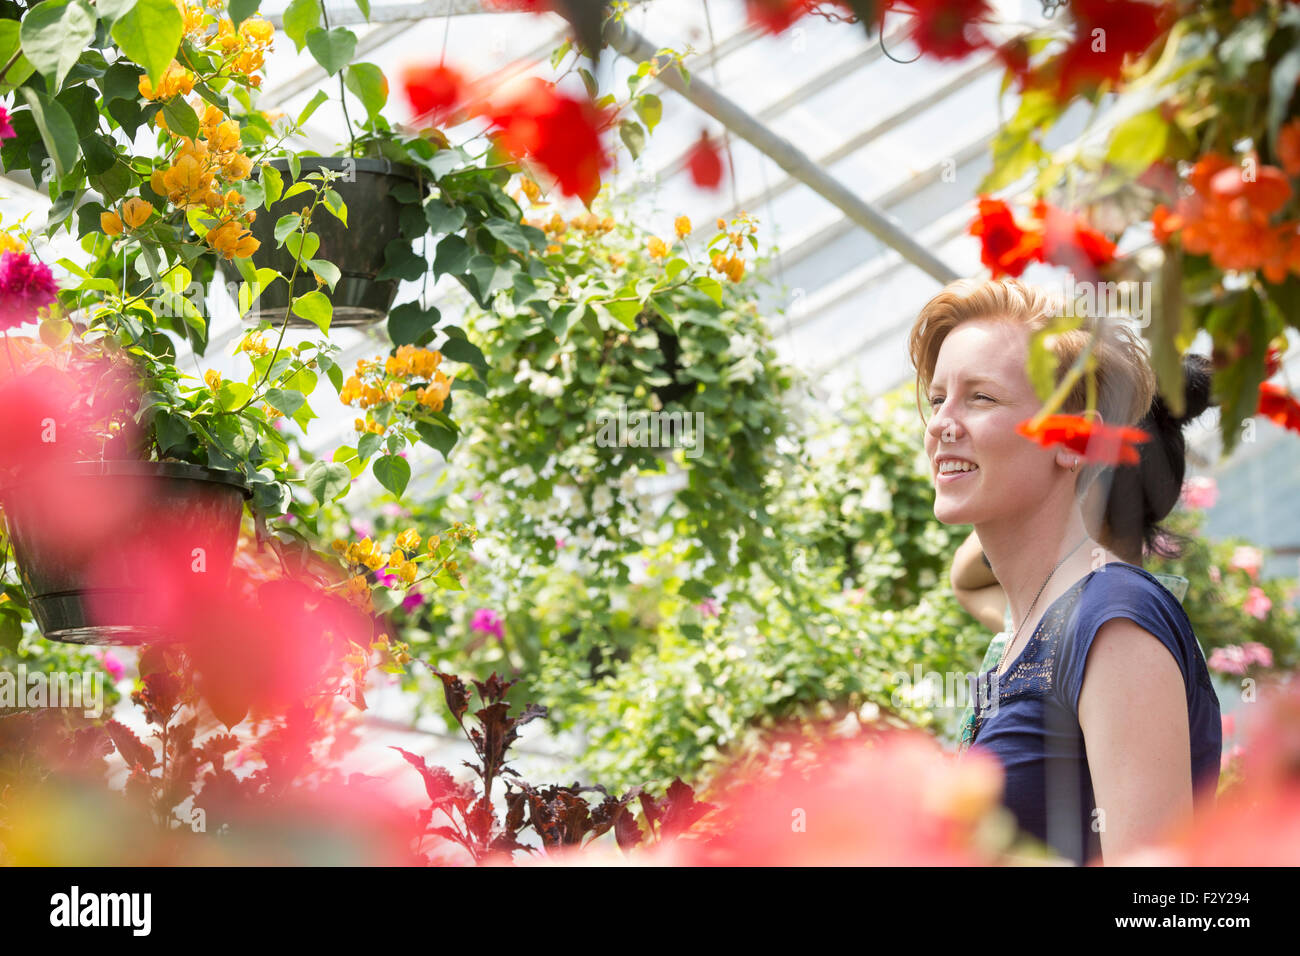 Junge Frau bunt blühenden Pflanzen in hängenden Körben in ein Gartencenter zu betrachten. Stockfoto